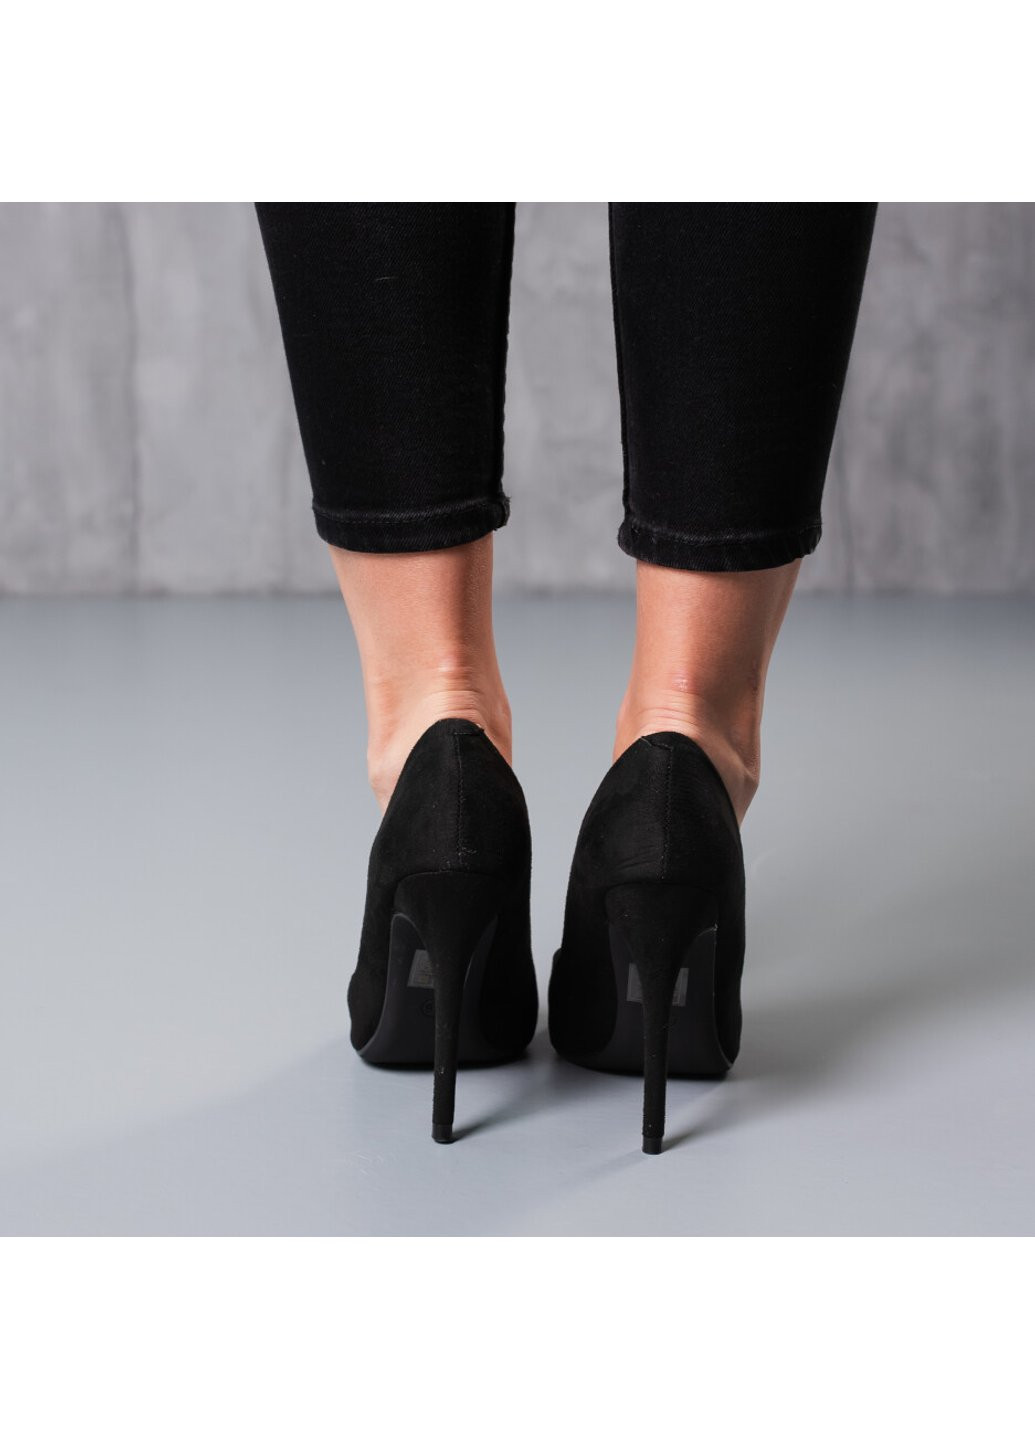 Туфли женские Ryder 3753 37 24 см Черный Fashion